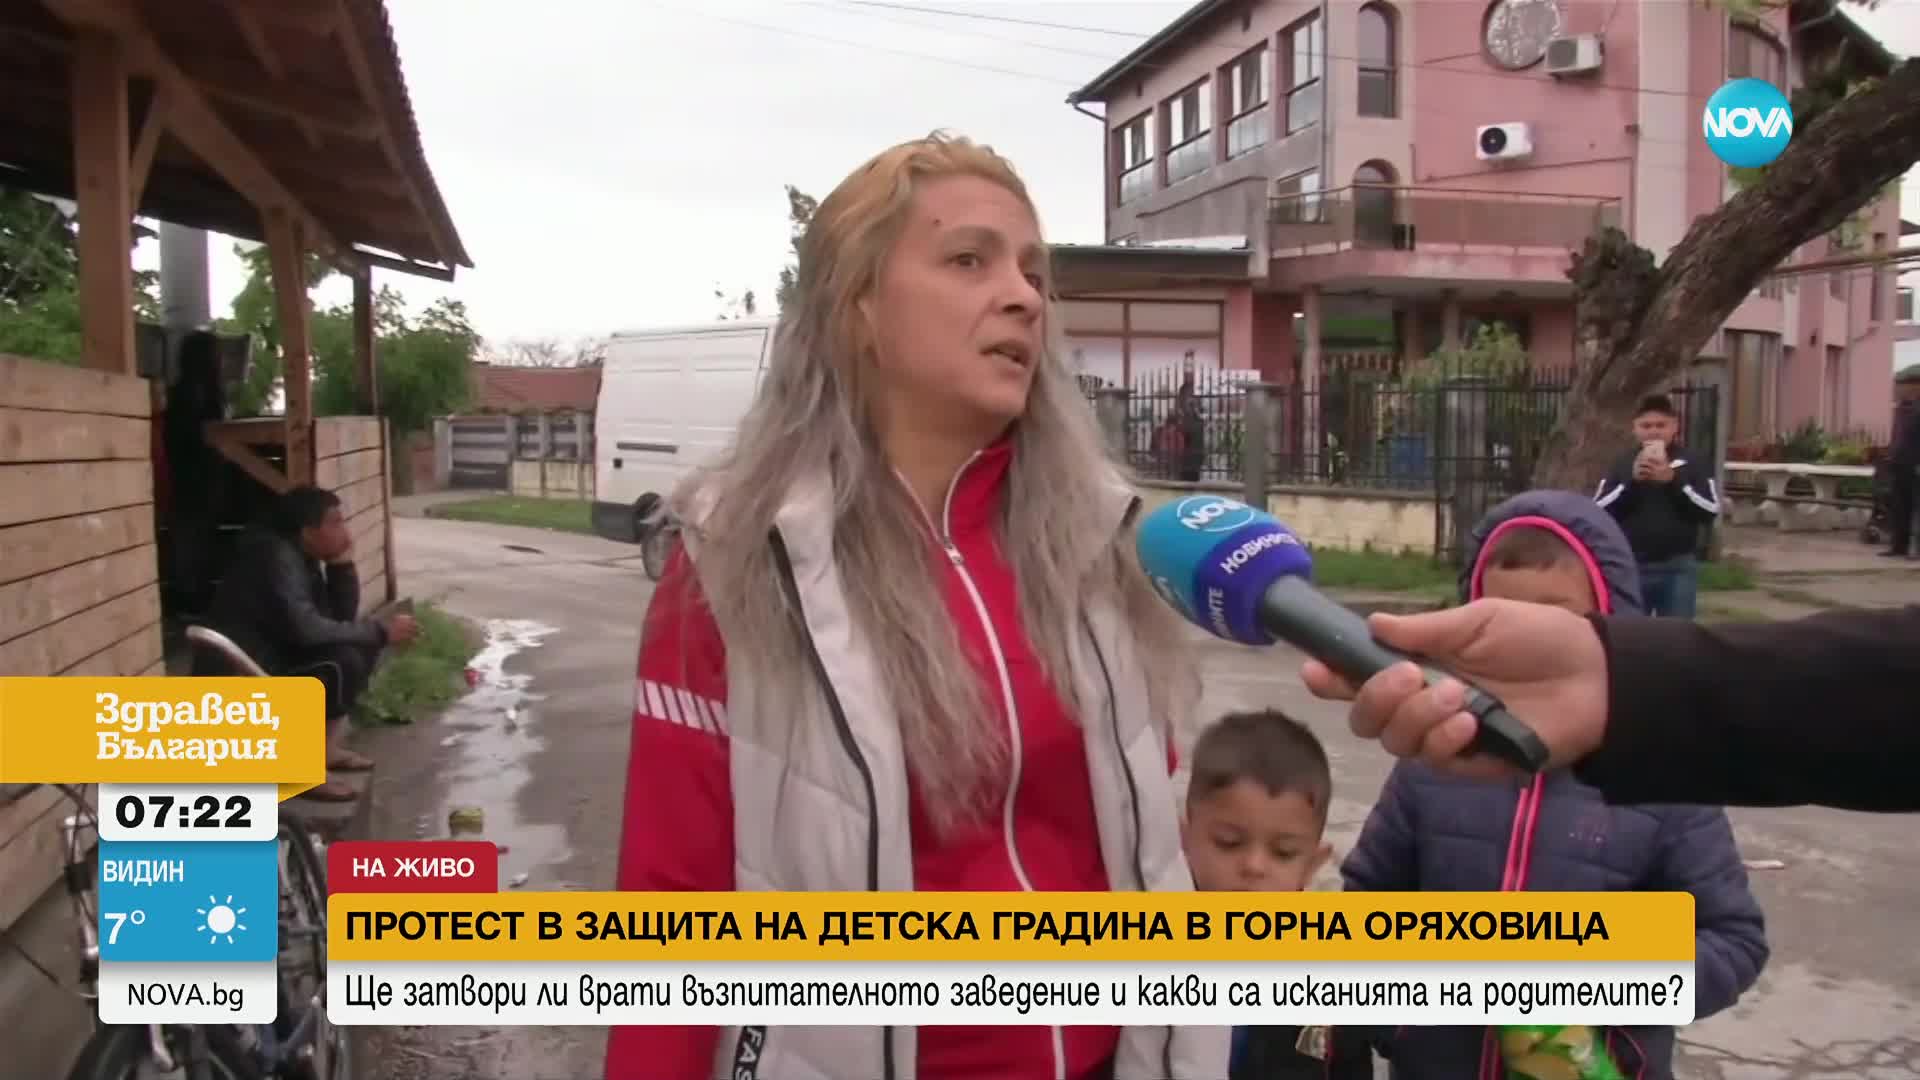 Предстоящо закриване на детска градина в Горна Оряховица предизвика недоволство